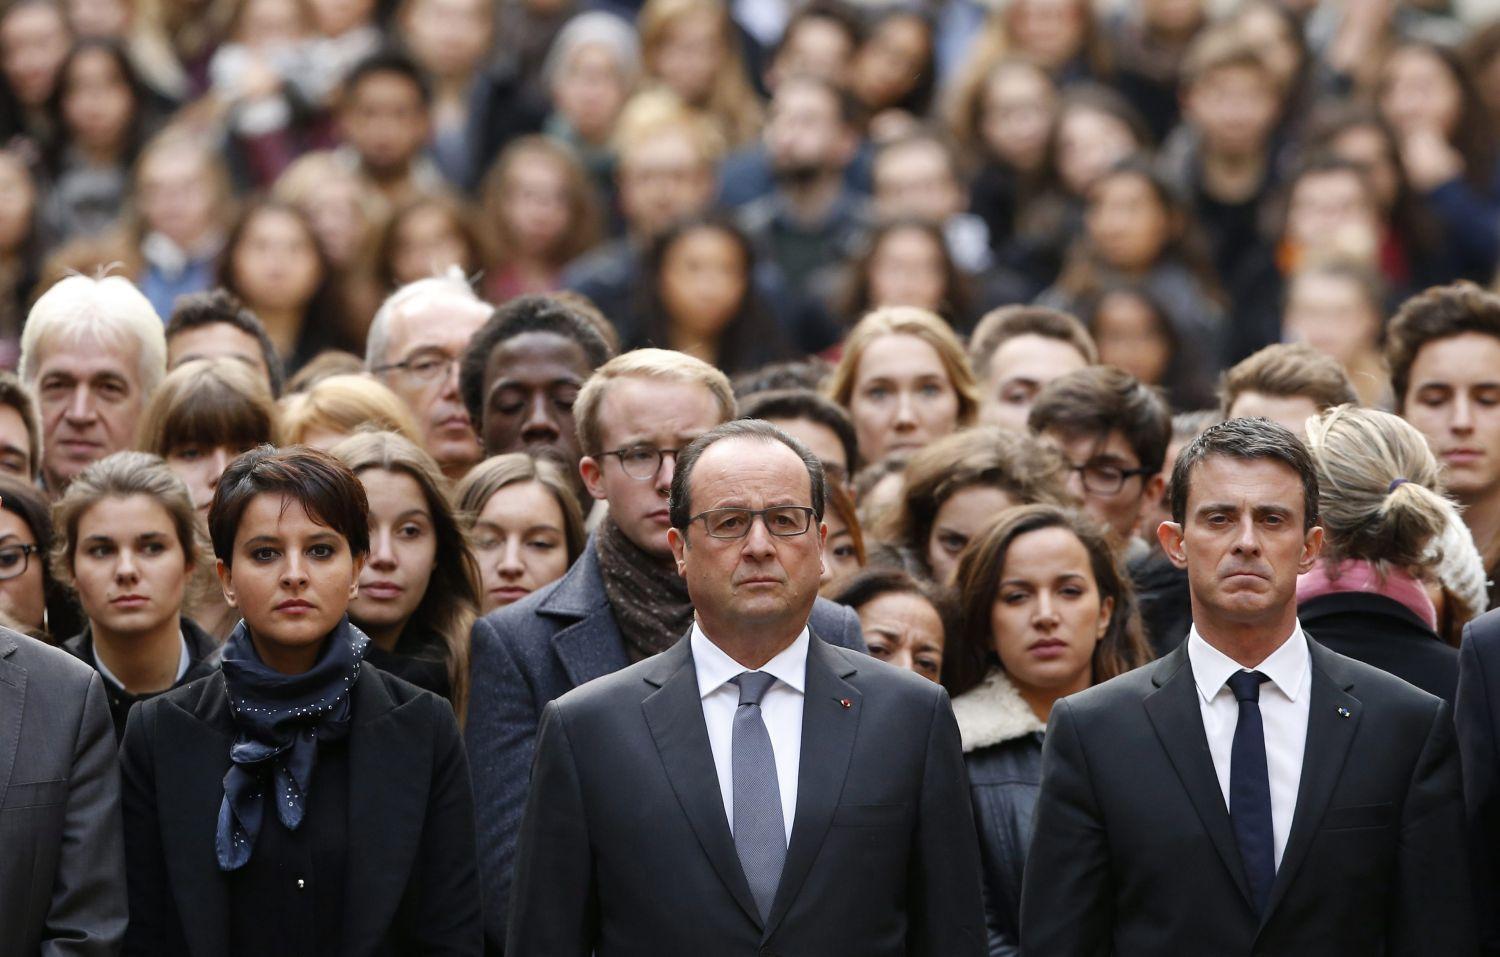 Francois Hollande francia államfő (középen), Manuel Valls kormányfő (jobbra) és Najat Vallaud-Belkacem oktatásügyi miniszter (balra) egyetemisták társaságában egyperces csenddel adózik az áldozatok emléke előtt a párizsi Sorbonne egyetemen 